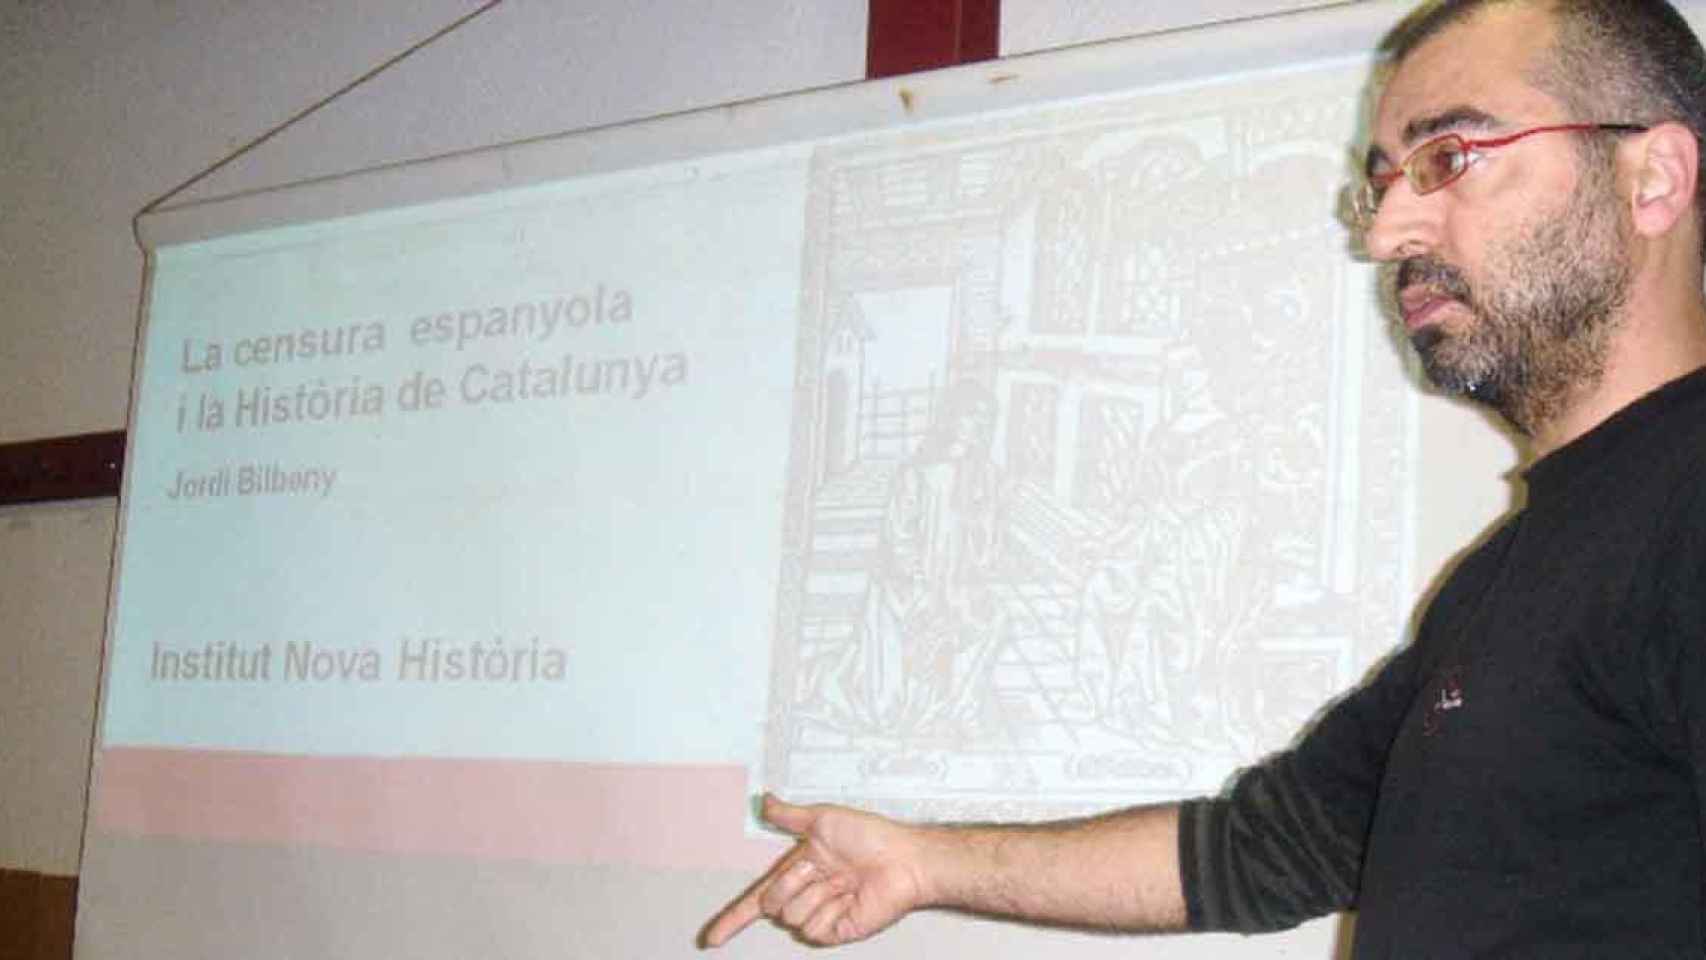 El fundador del Institut Nova Història, Jordi Bilbeny, que predica el revisionismo histórico del tipo Shakespeare era Cervantes y Santa Teresa leía en catalán” / INH